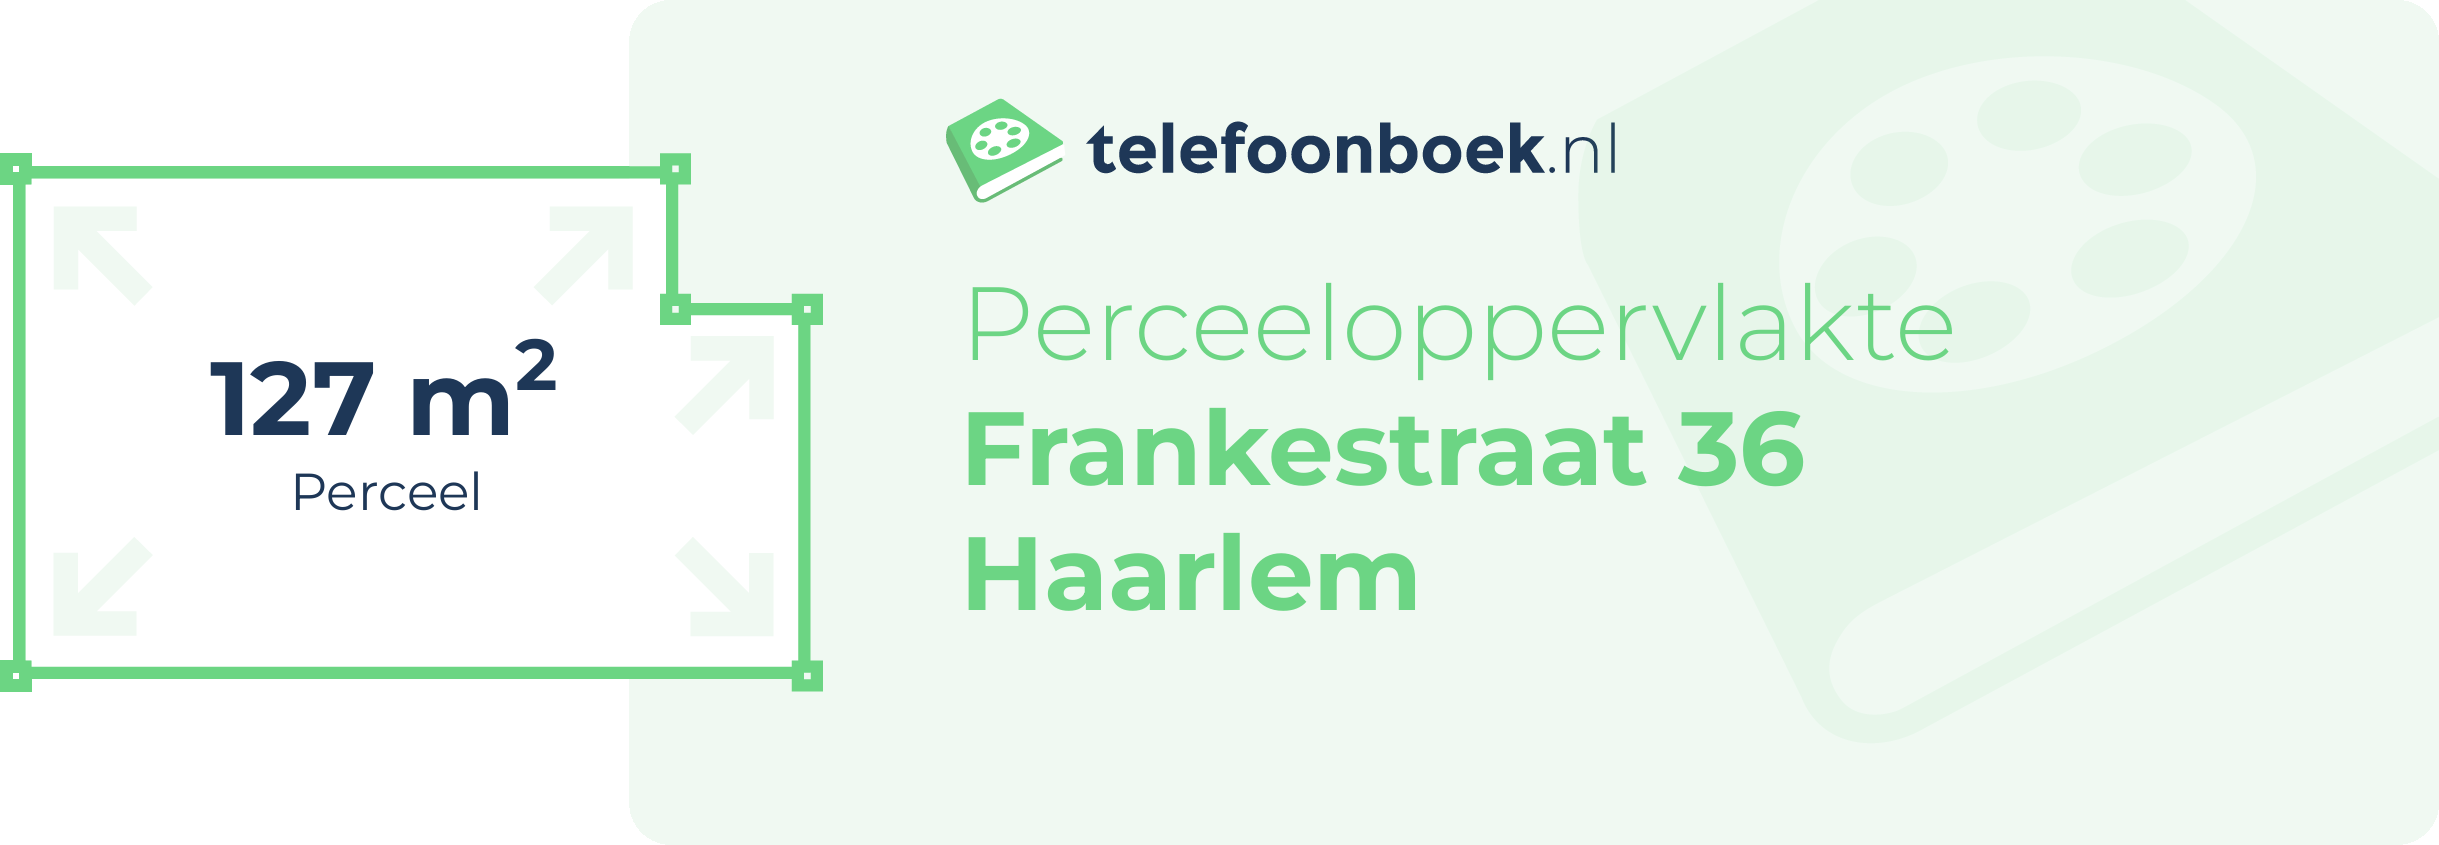 Perceeloppervlakte Frankestraat 36 Haarlem